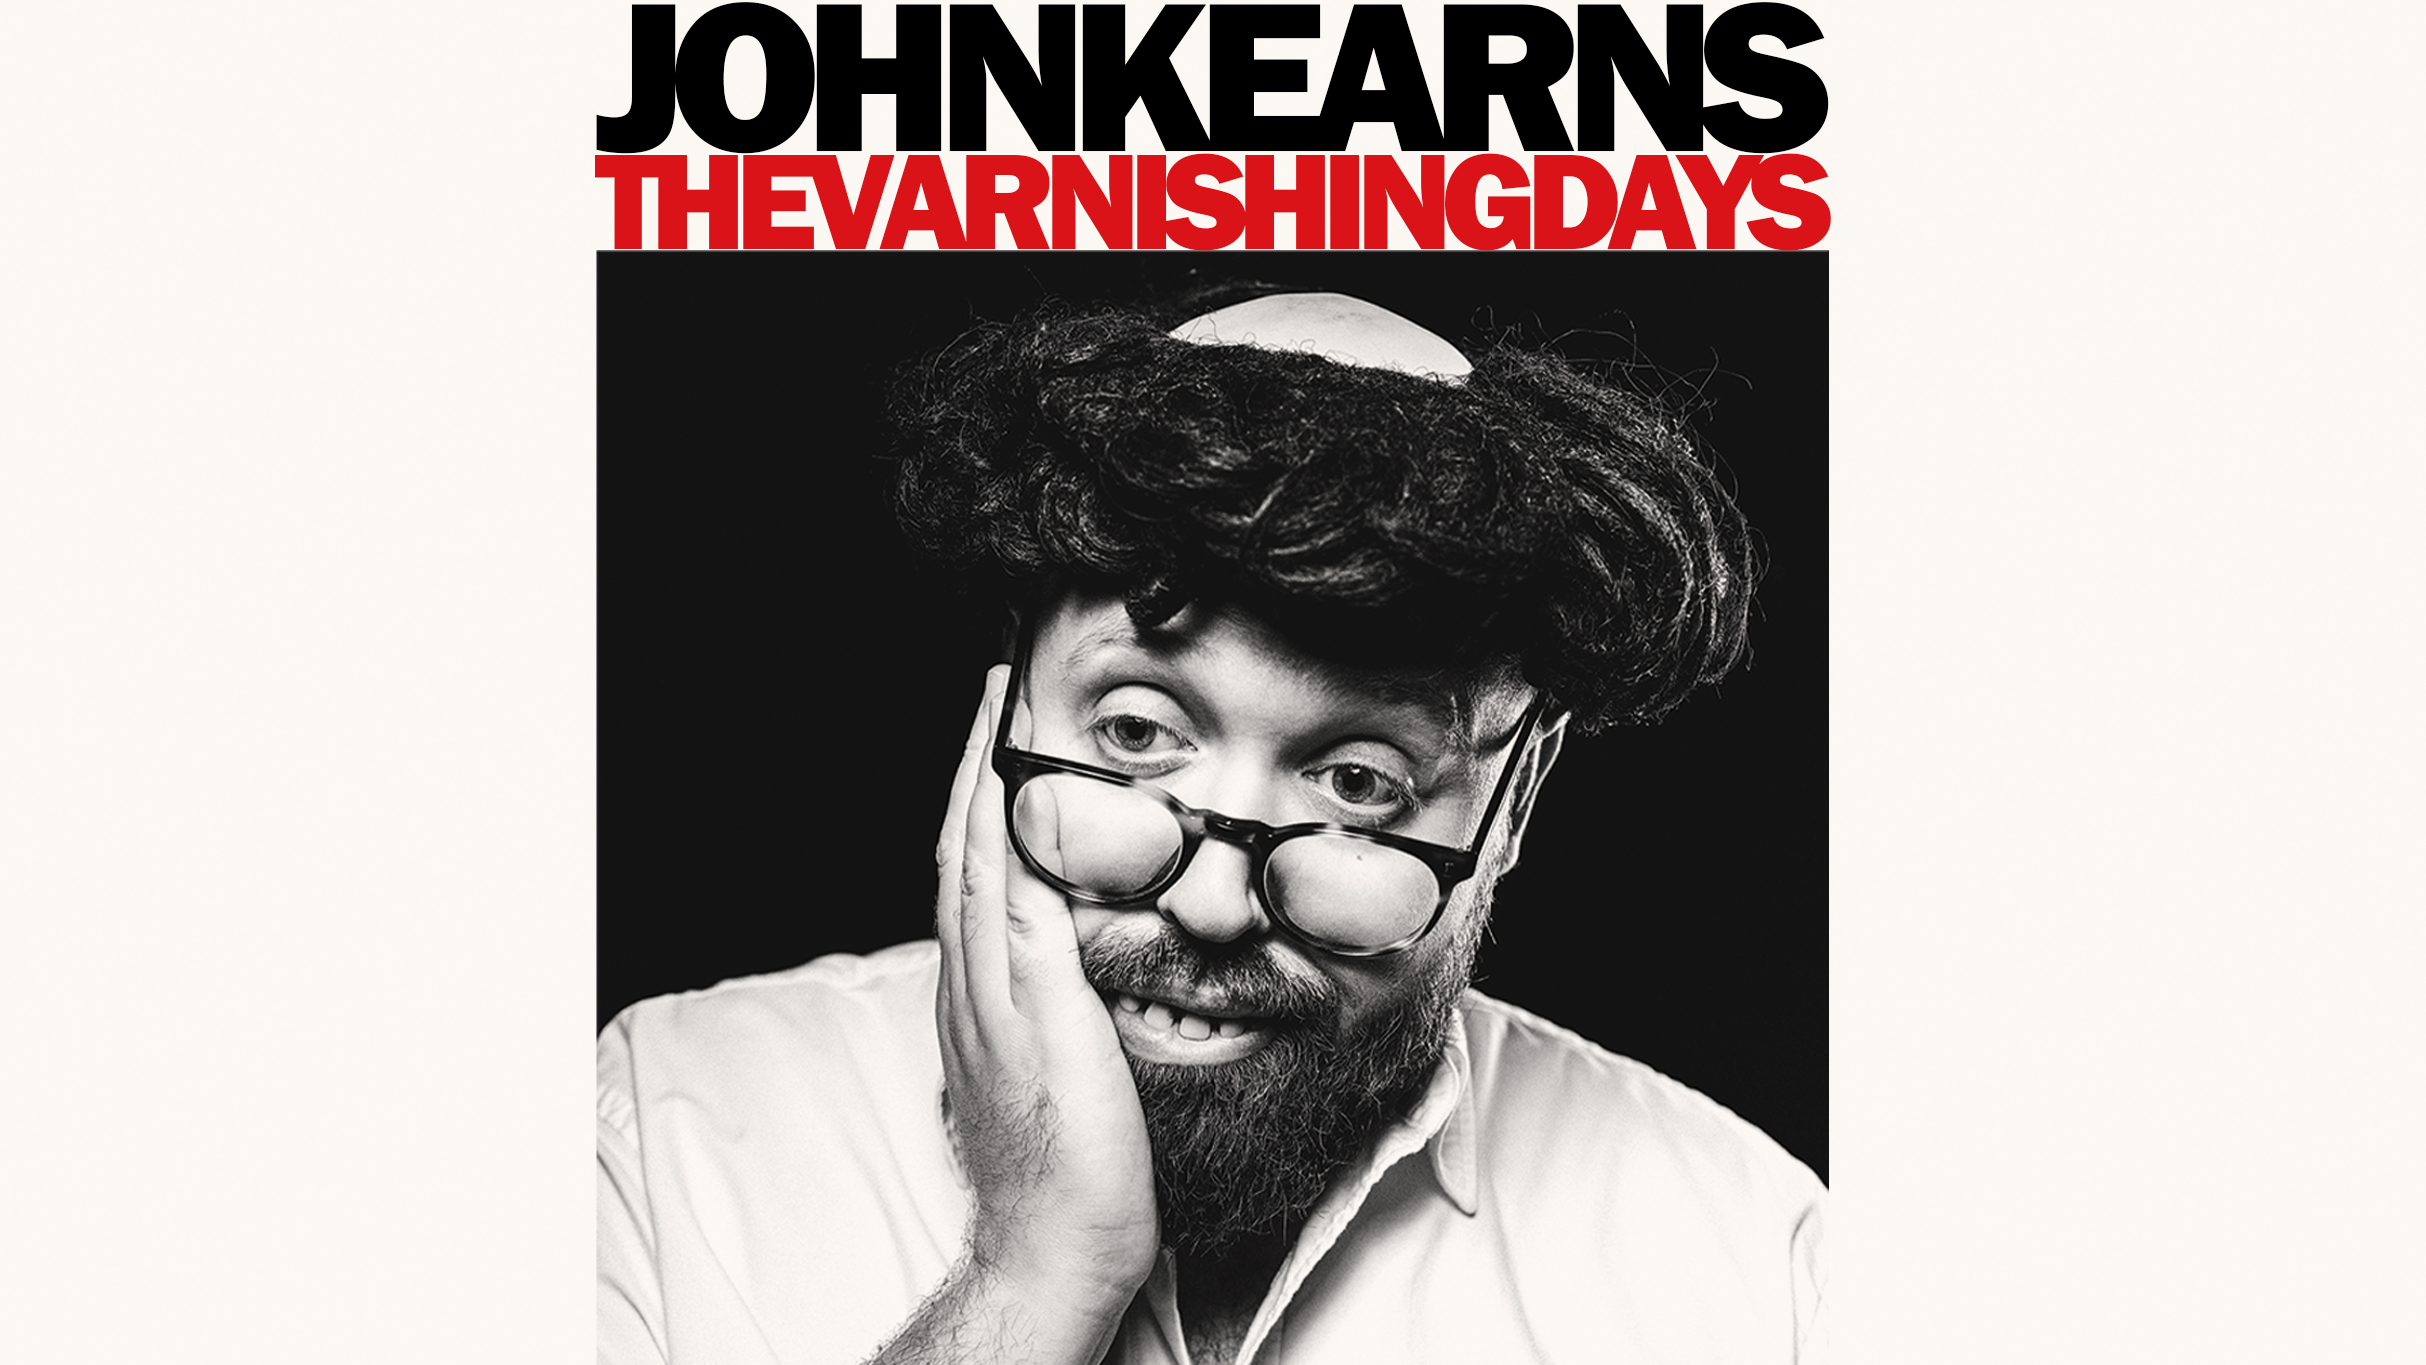 John Kearns - the Varnishing Days Event Title Pic